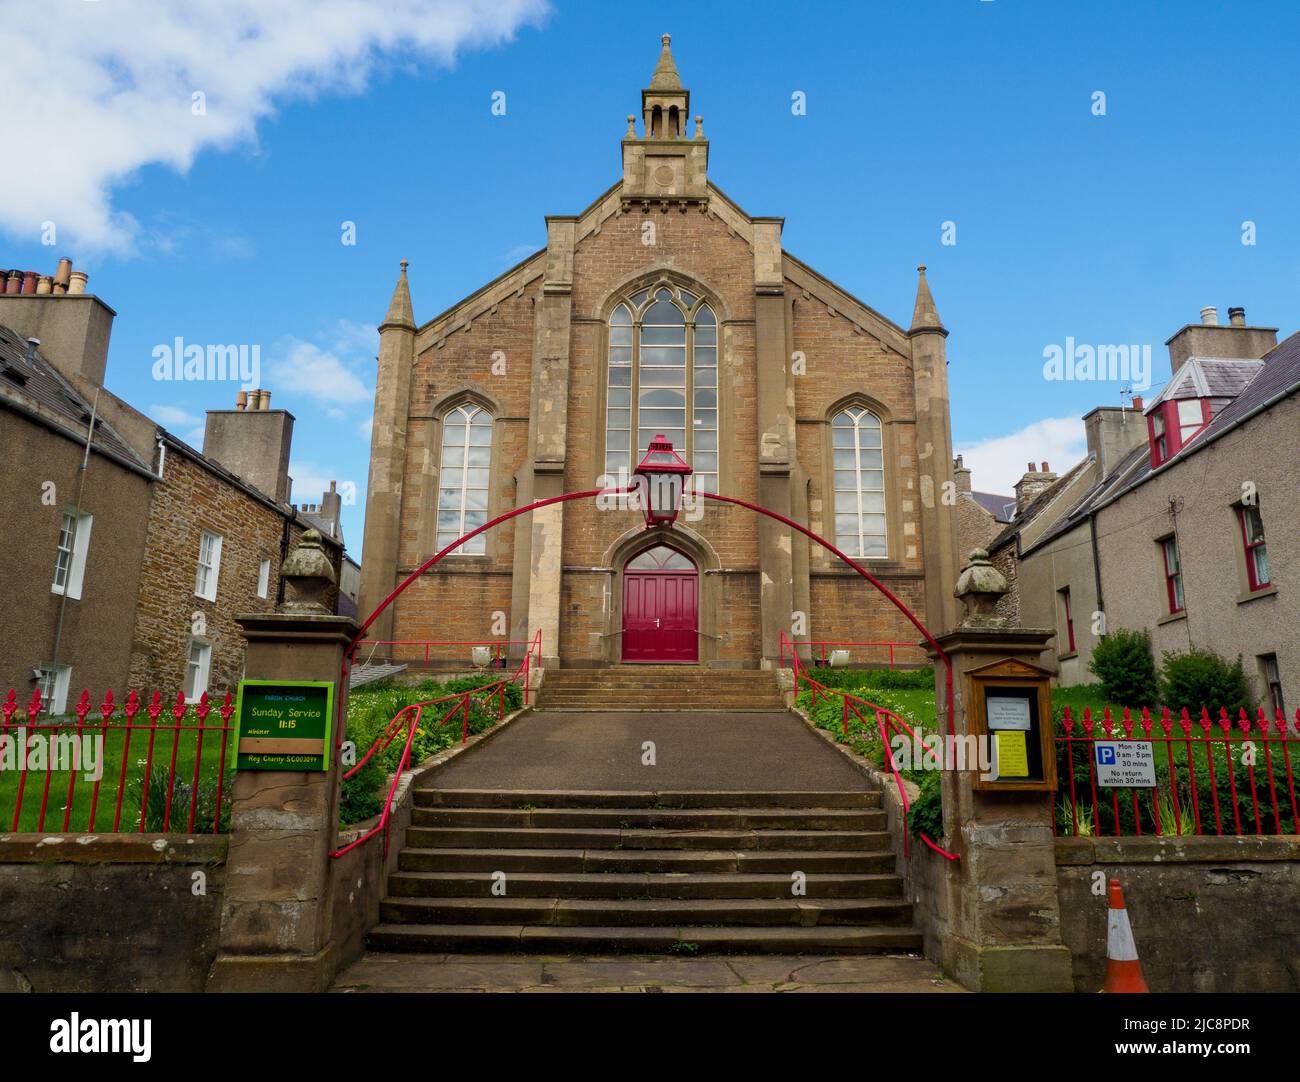 L'église paroissiale de Stromness, église de dénomination d'Écosse, est située dans la ville de Stromness sur les îles Orcades, en Écosse. Banque D'Images